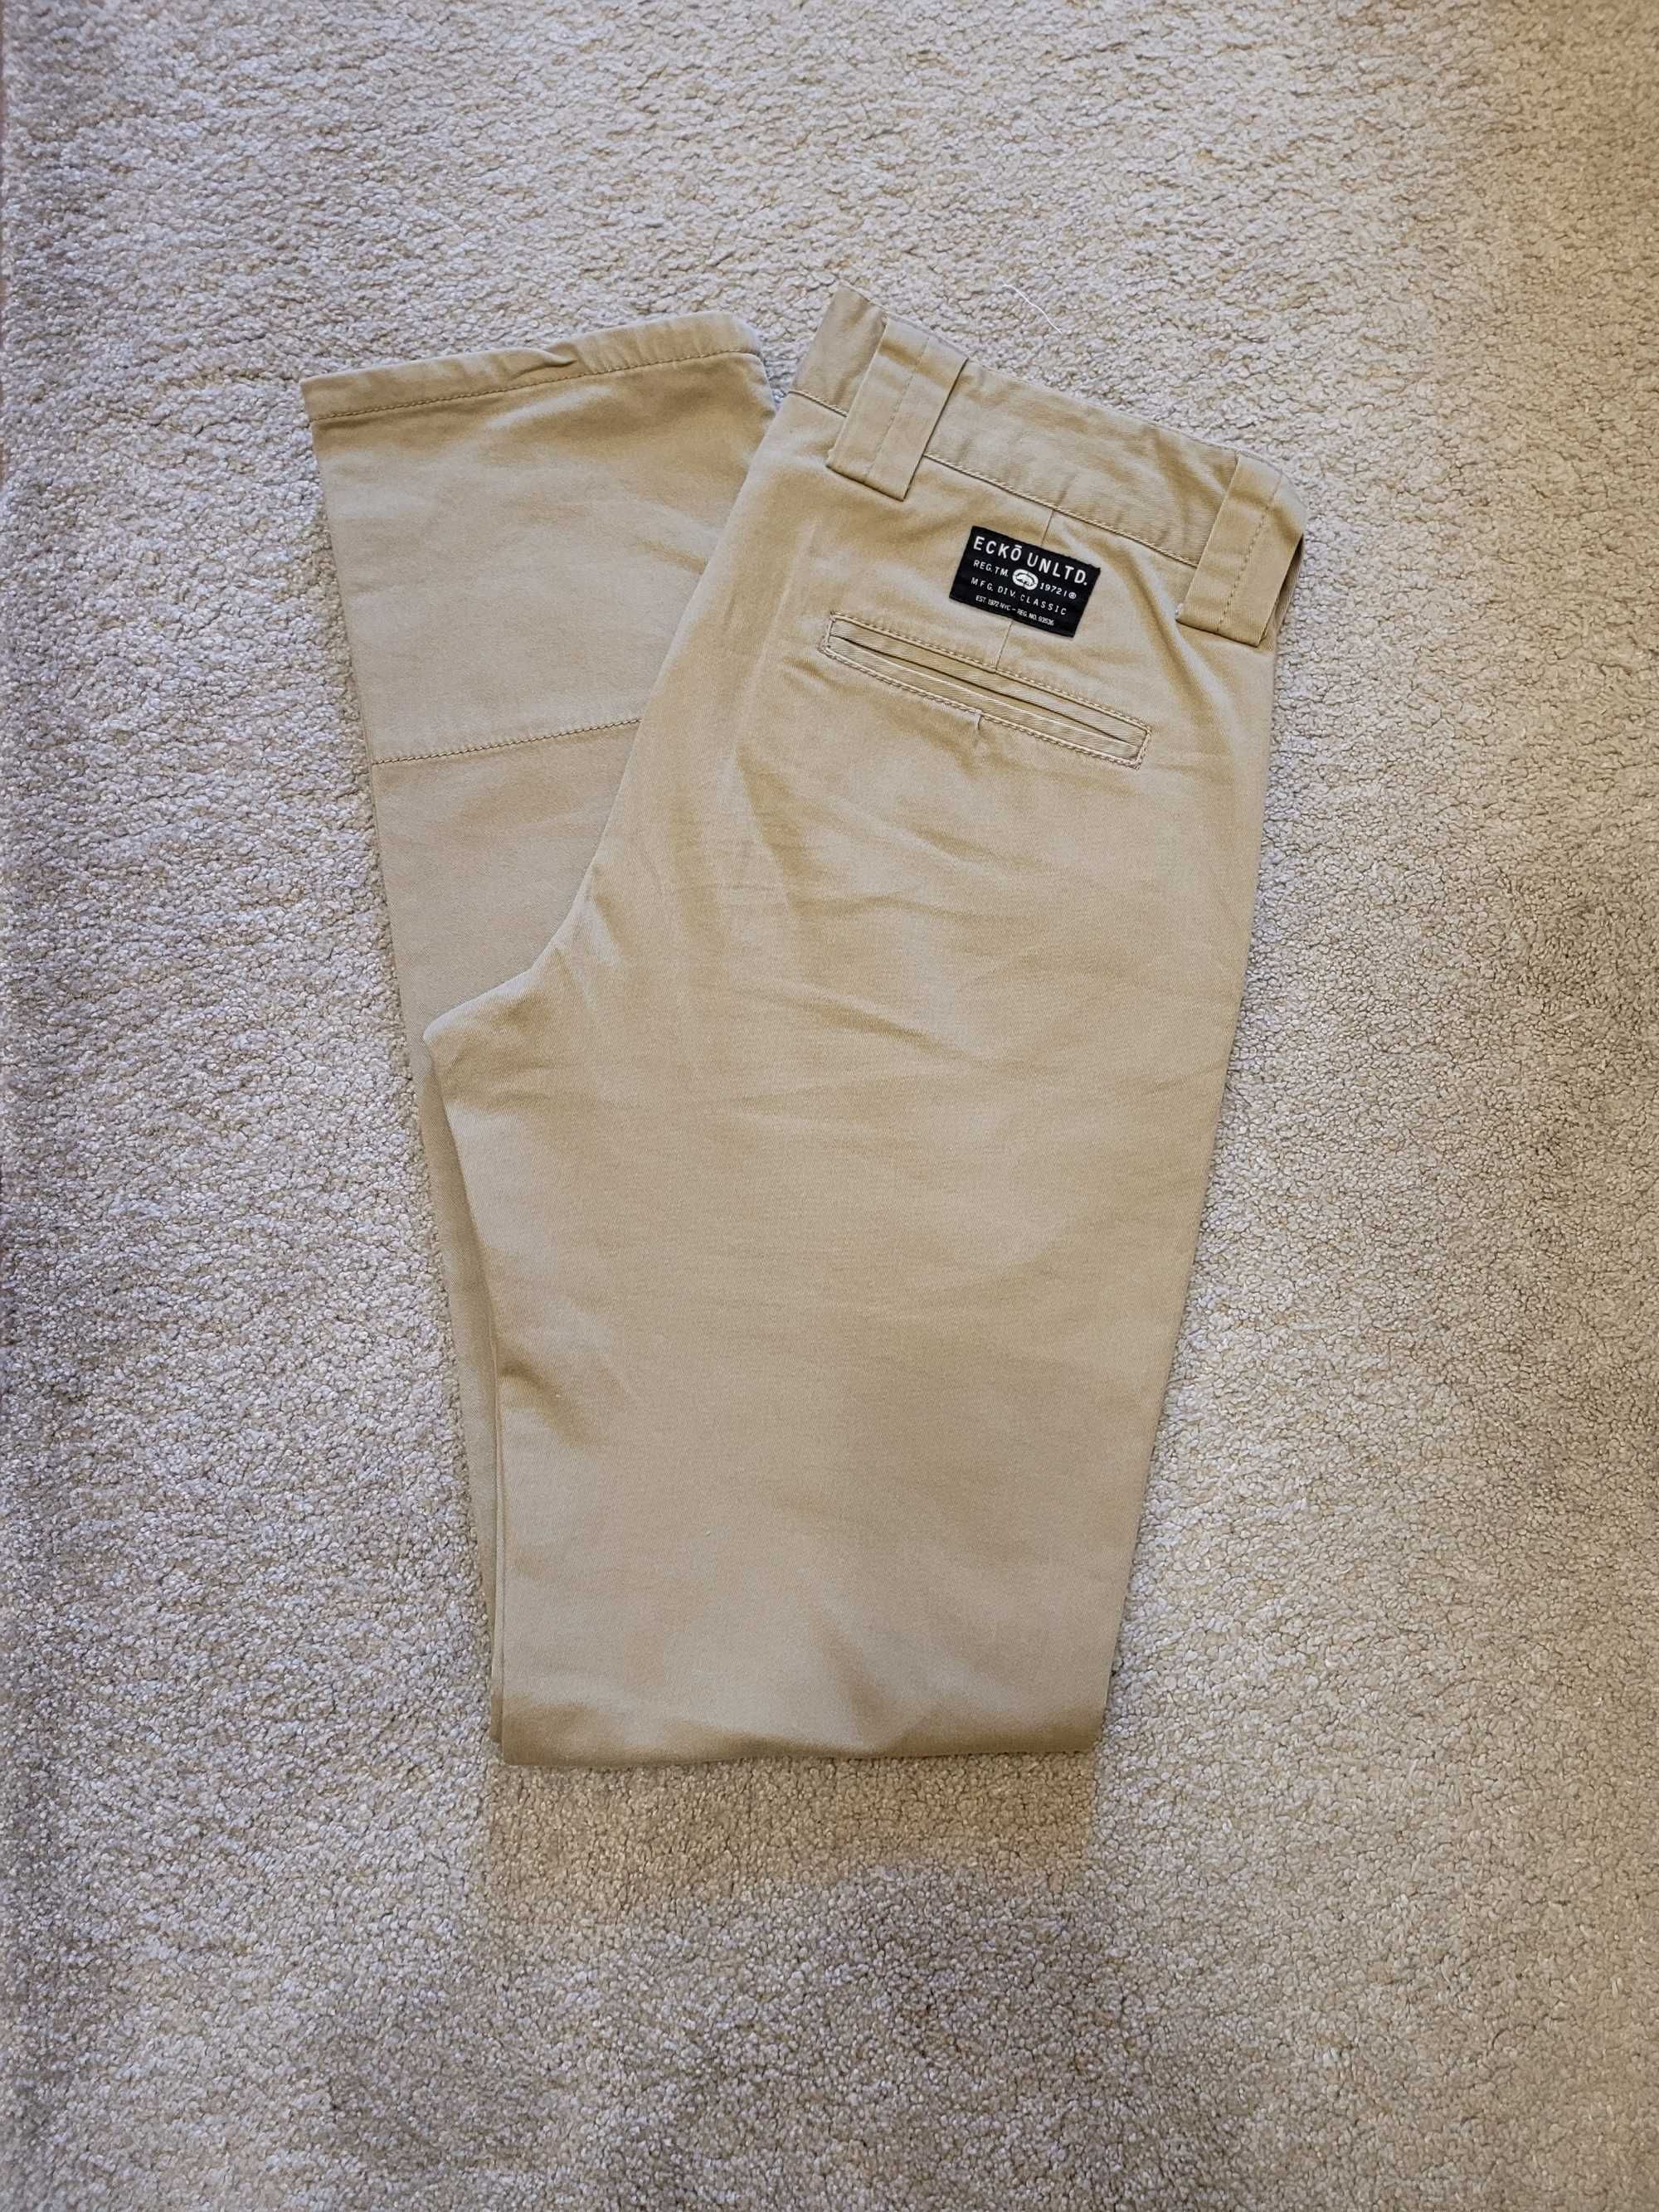 Spodnie męskie Ecko Unltd. rozmiar W30 (pas 82-84 cm)- skinny fit